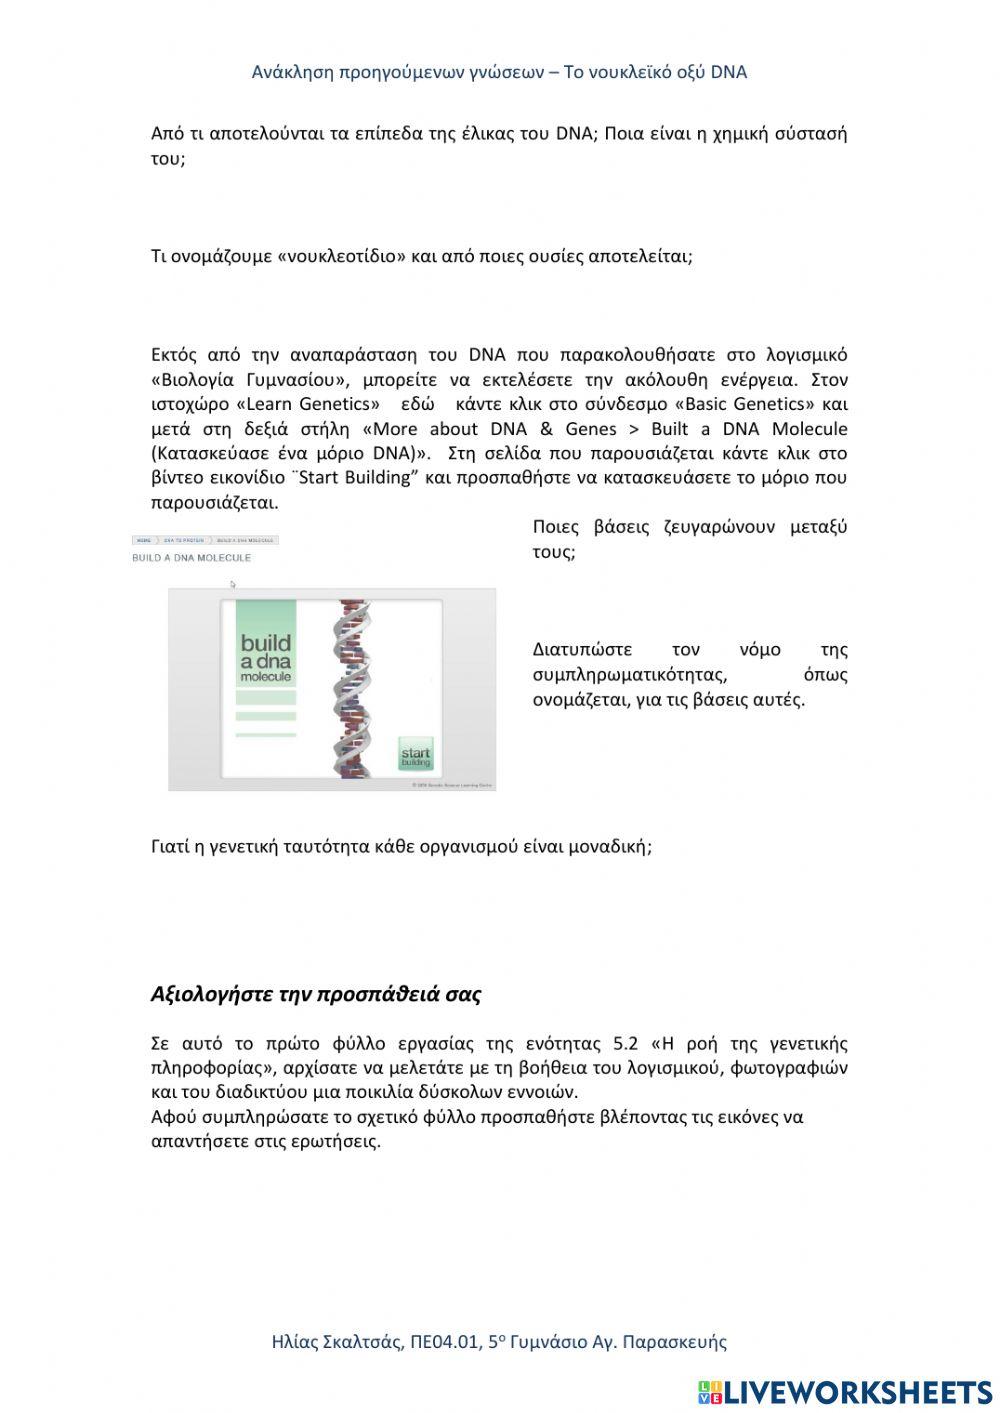 5.2.1 Το Νουκλεϊκό Οξύ DNA